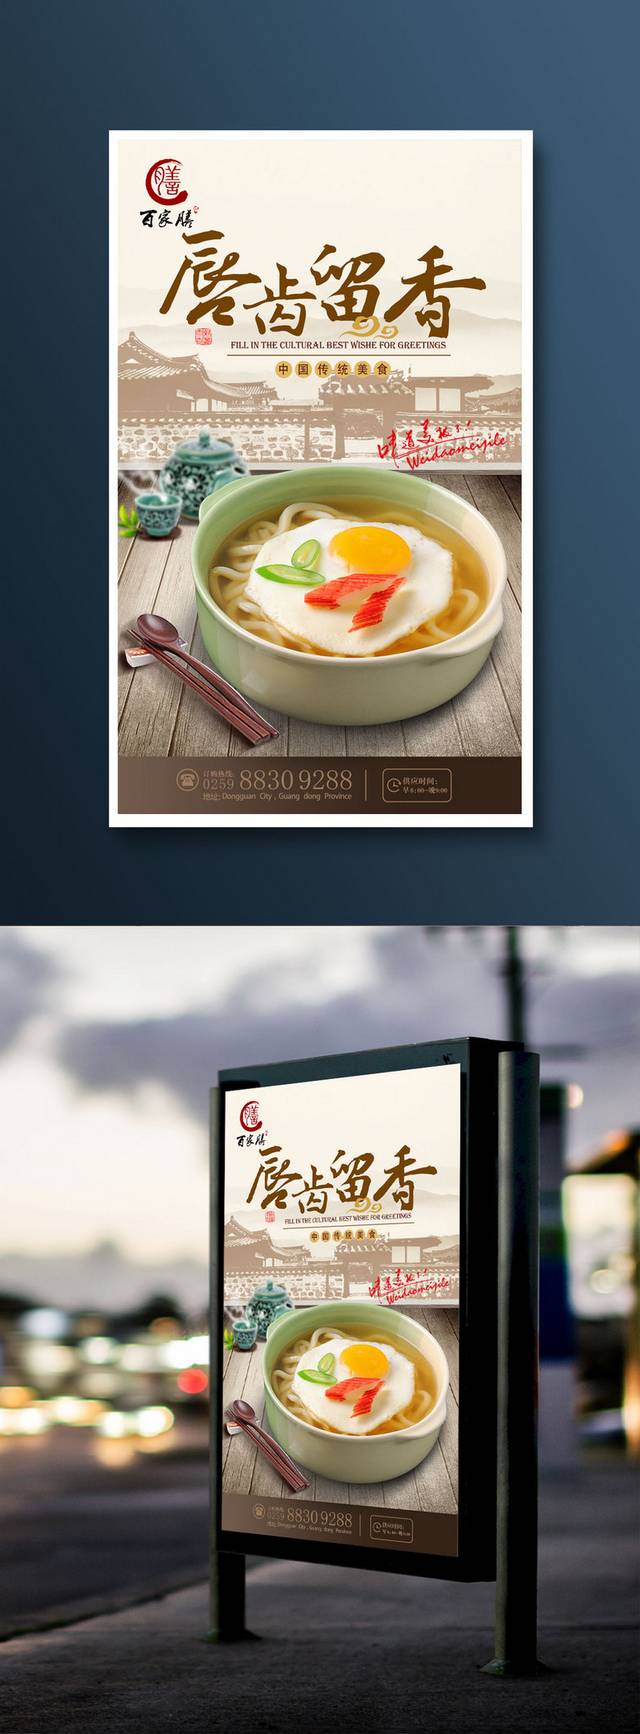 中国风米线宣传海报设计